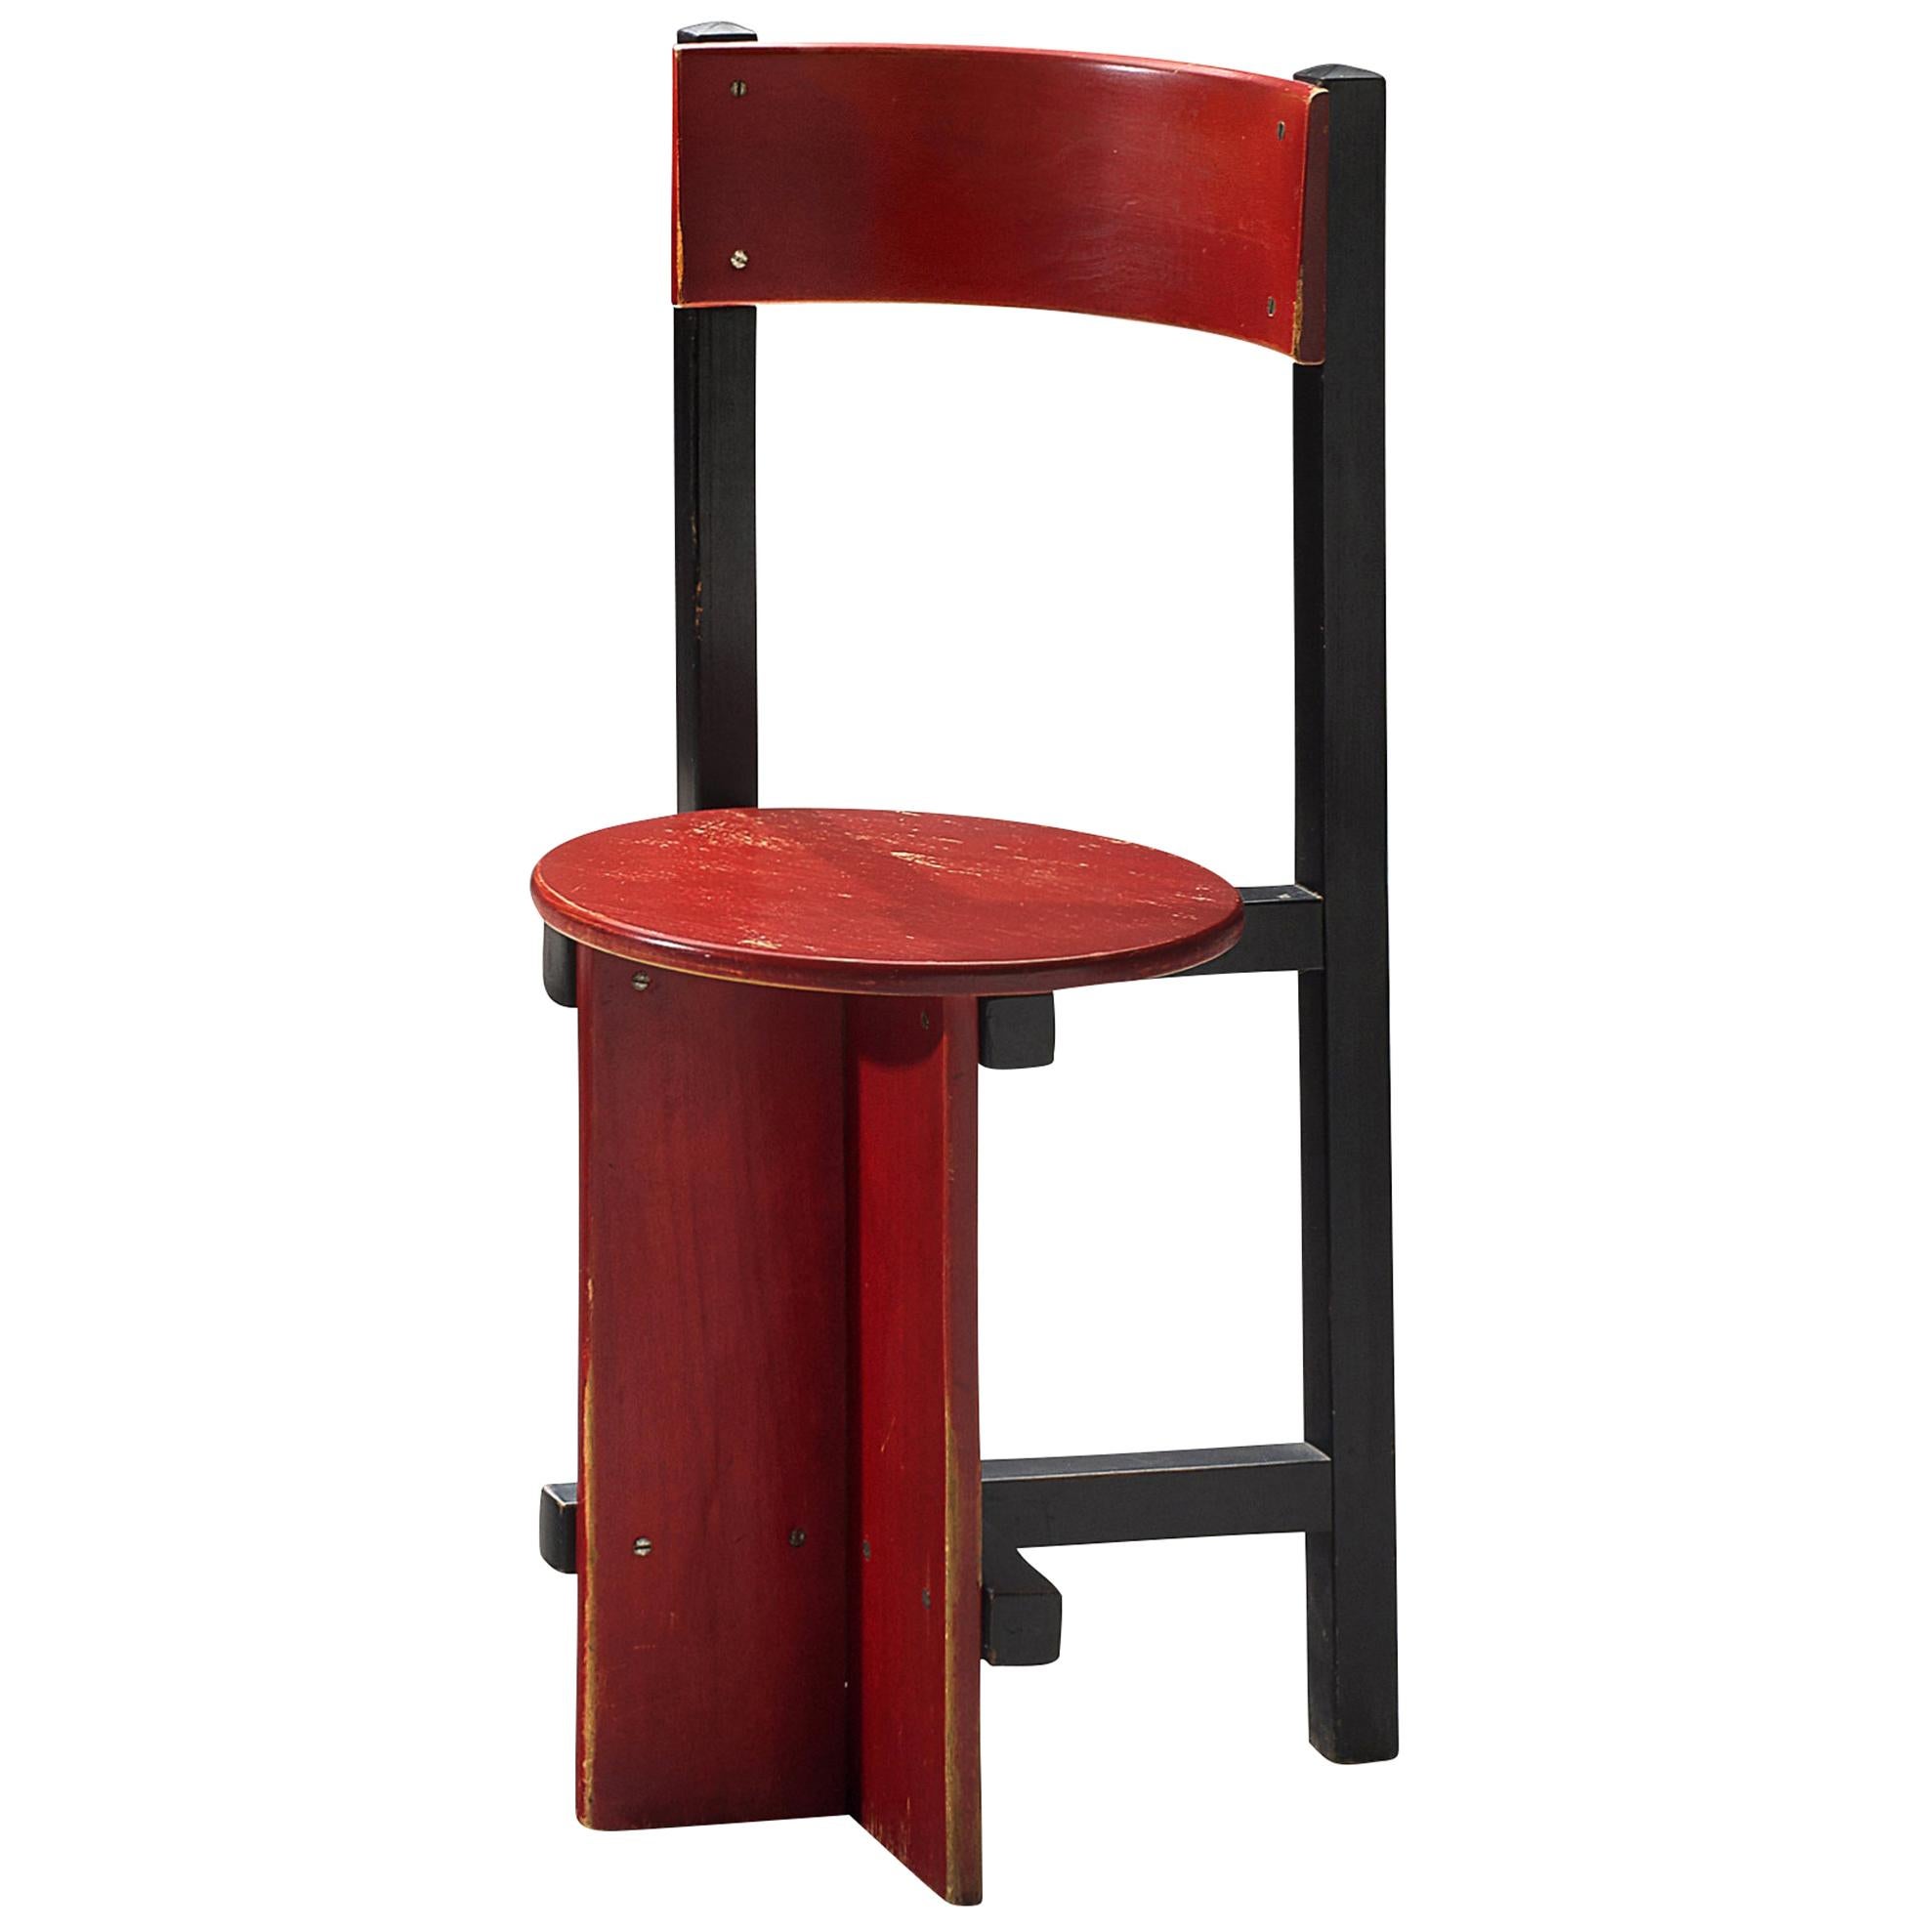 Piet Blom Rare "Bastille" Chair